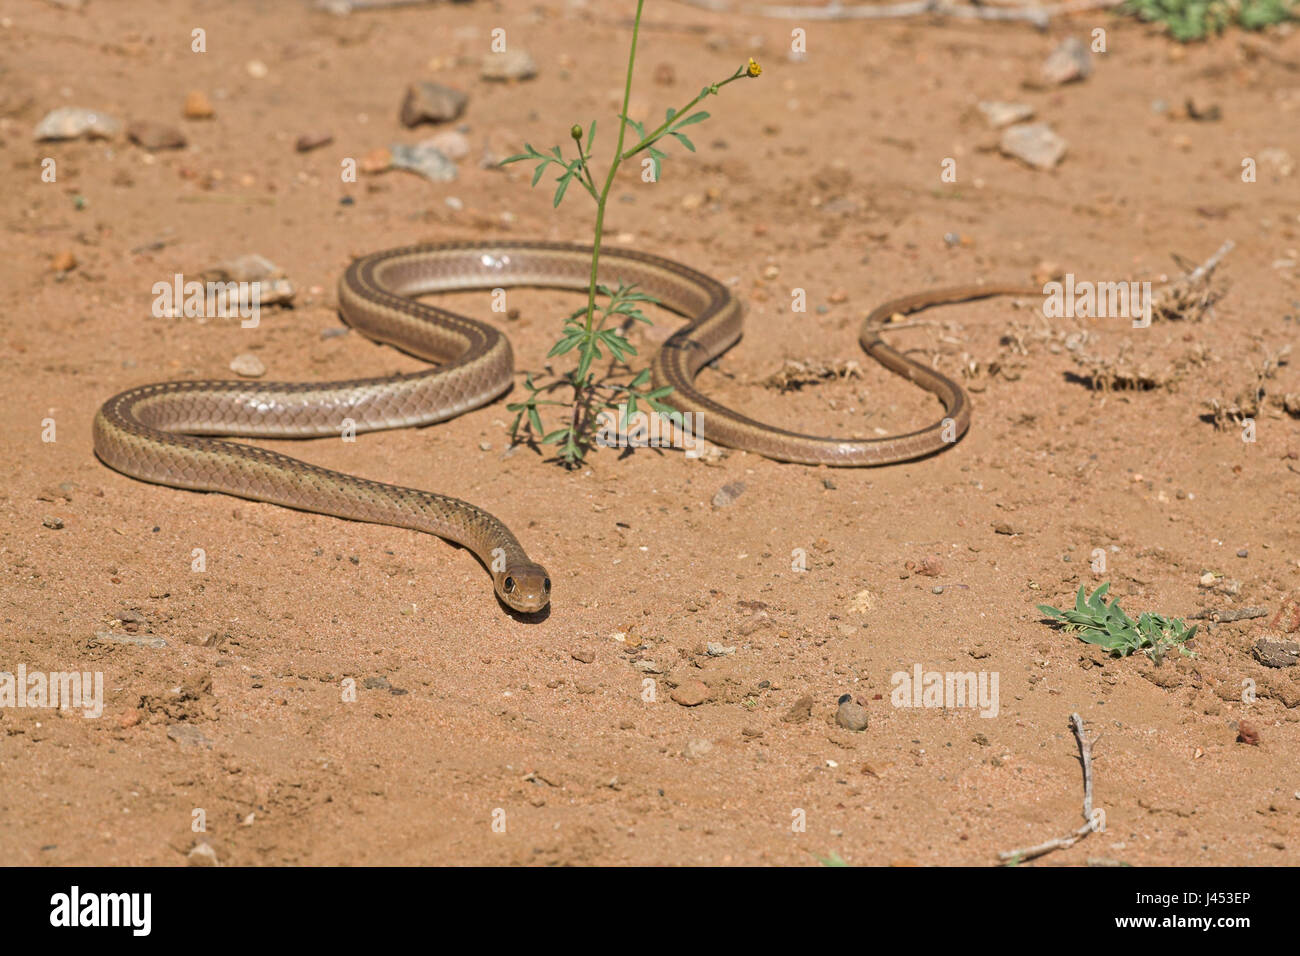 Overzichtsfoto van een olive whip snake op zand; overview of a olive whip snake on sandOverzichtsfoto van een Kortsnuitsweepslang op zand; overview of a short-snouted whip snake on sand Stock Photo